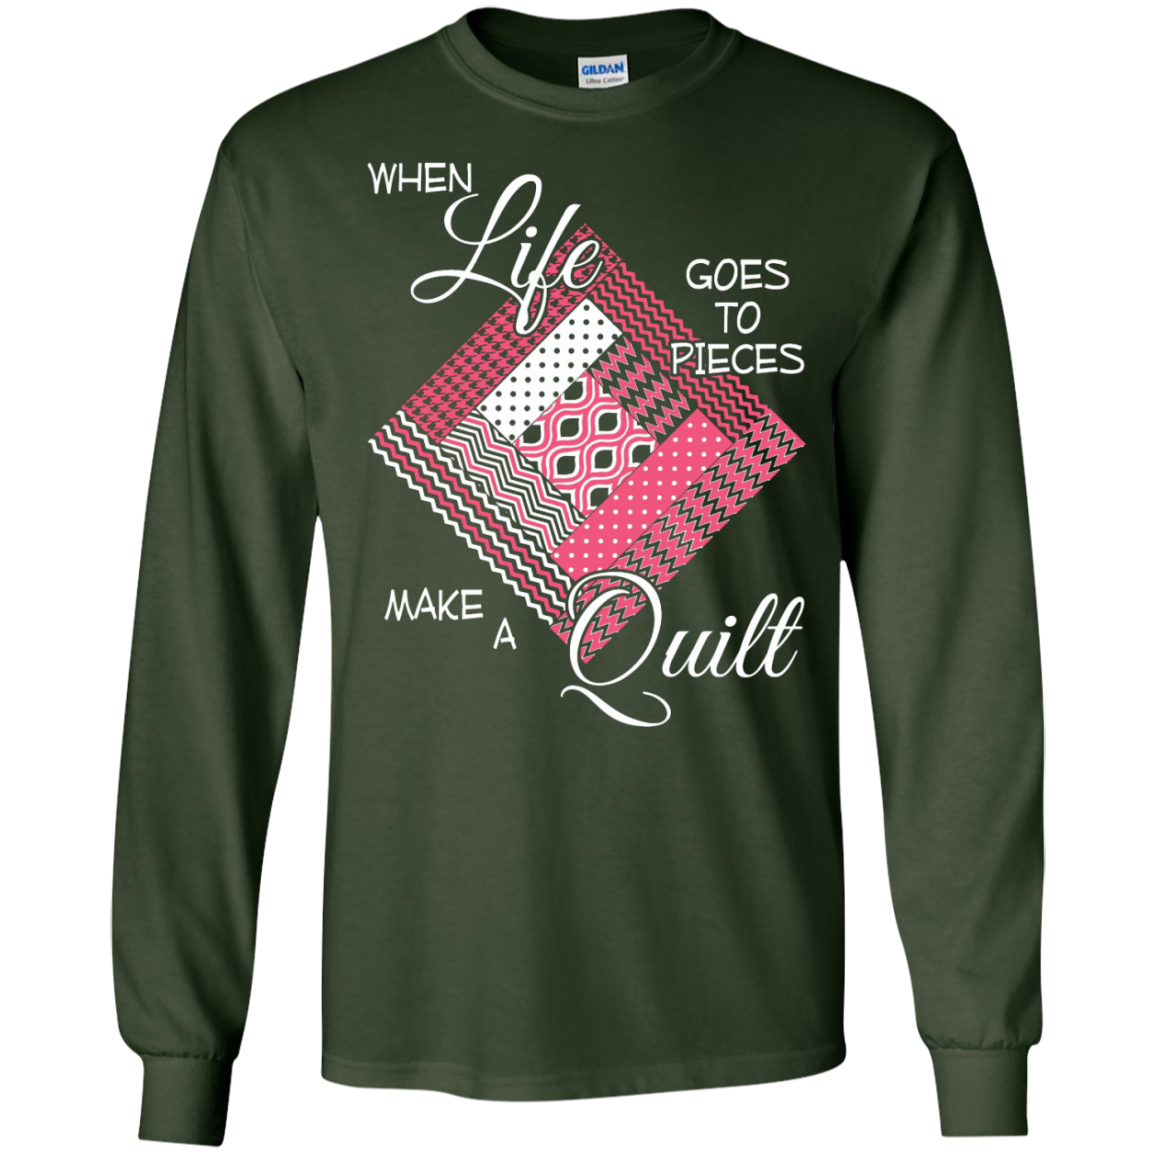 Make a Quilt (pink) Long Sleeve Ultra Cotton T-Shirt - Crafter4Life - 2